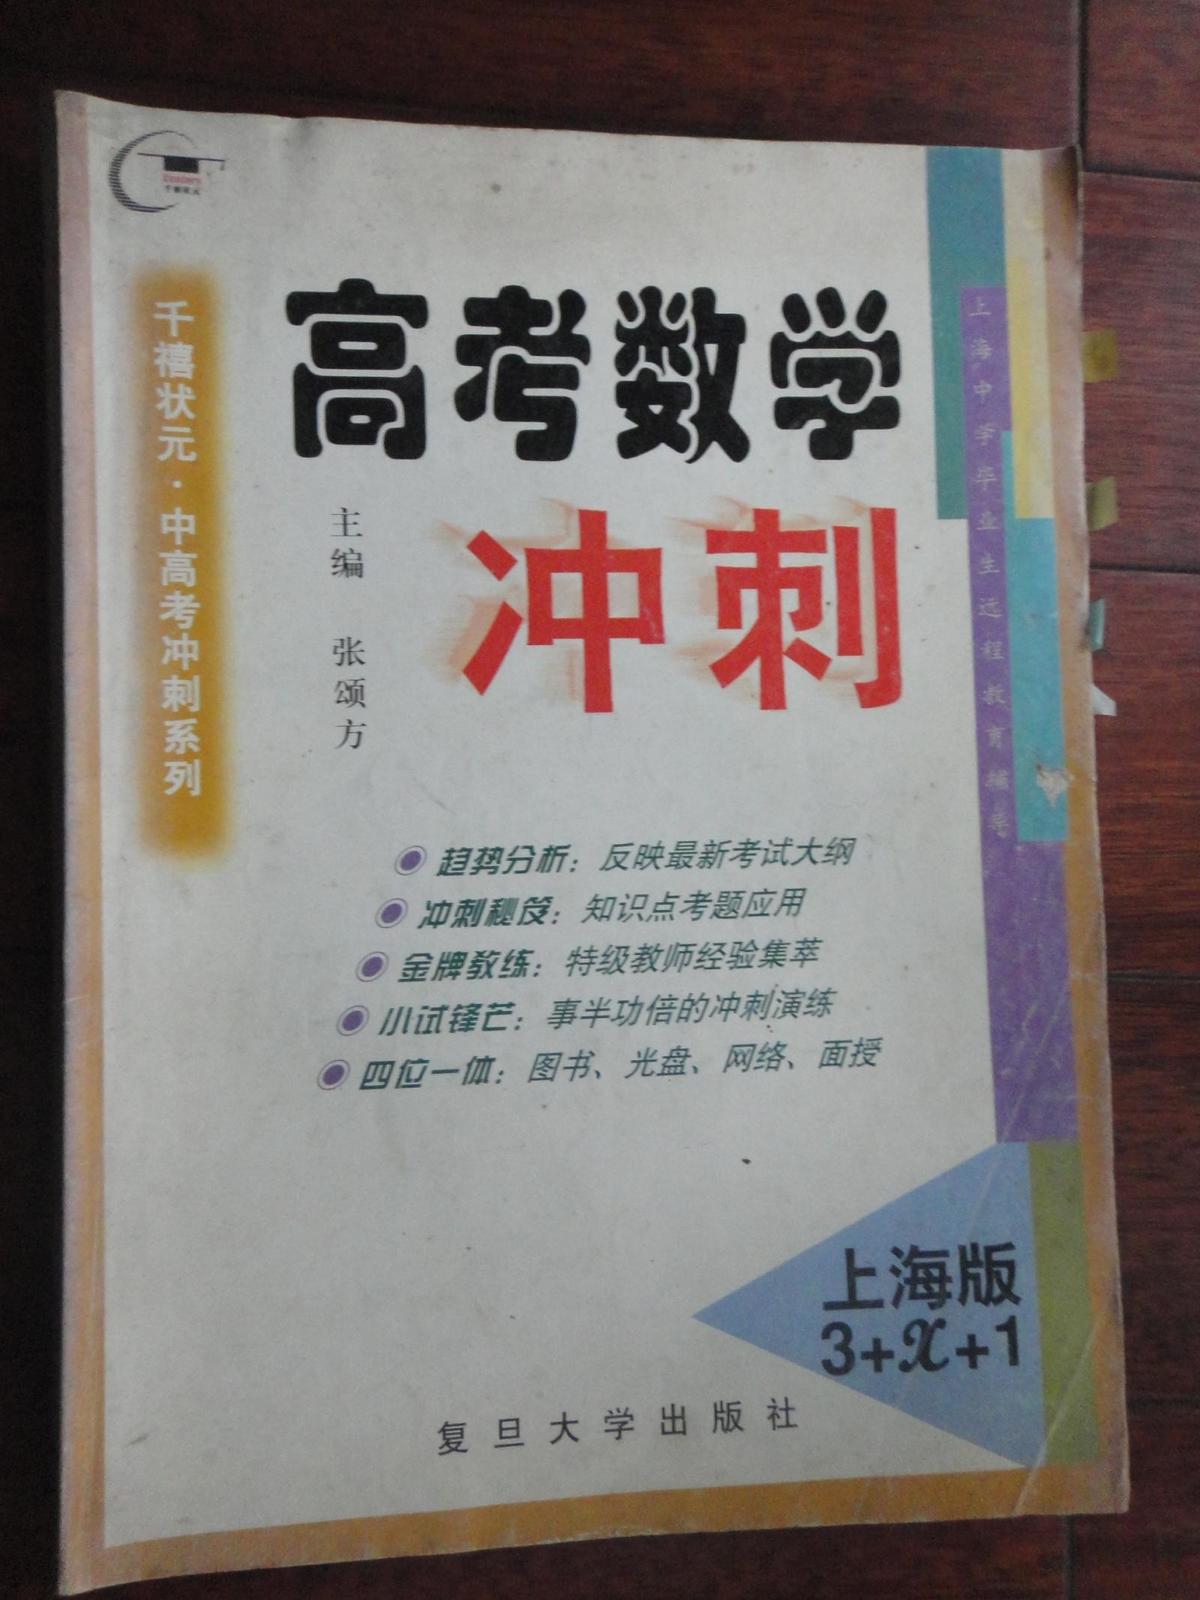 高考数学冲刺-上海版3+X+1 复旦大学出版社 j-39